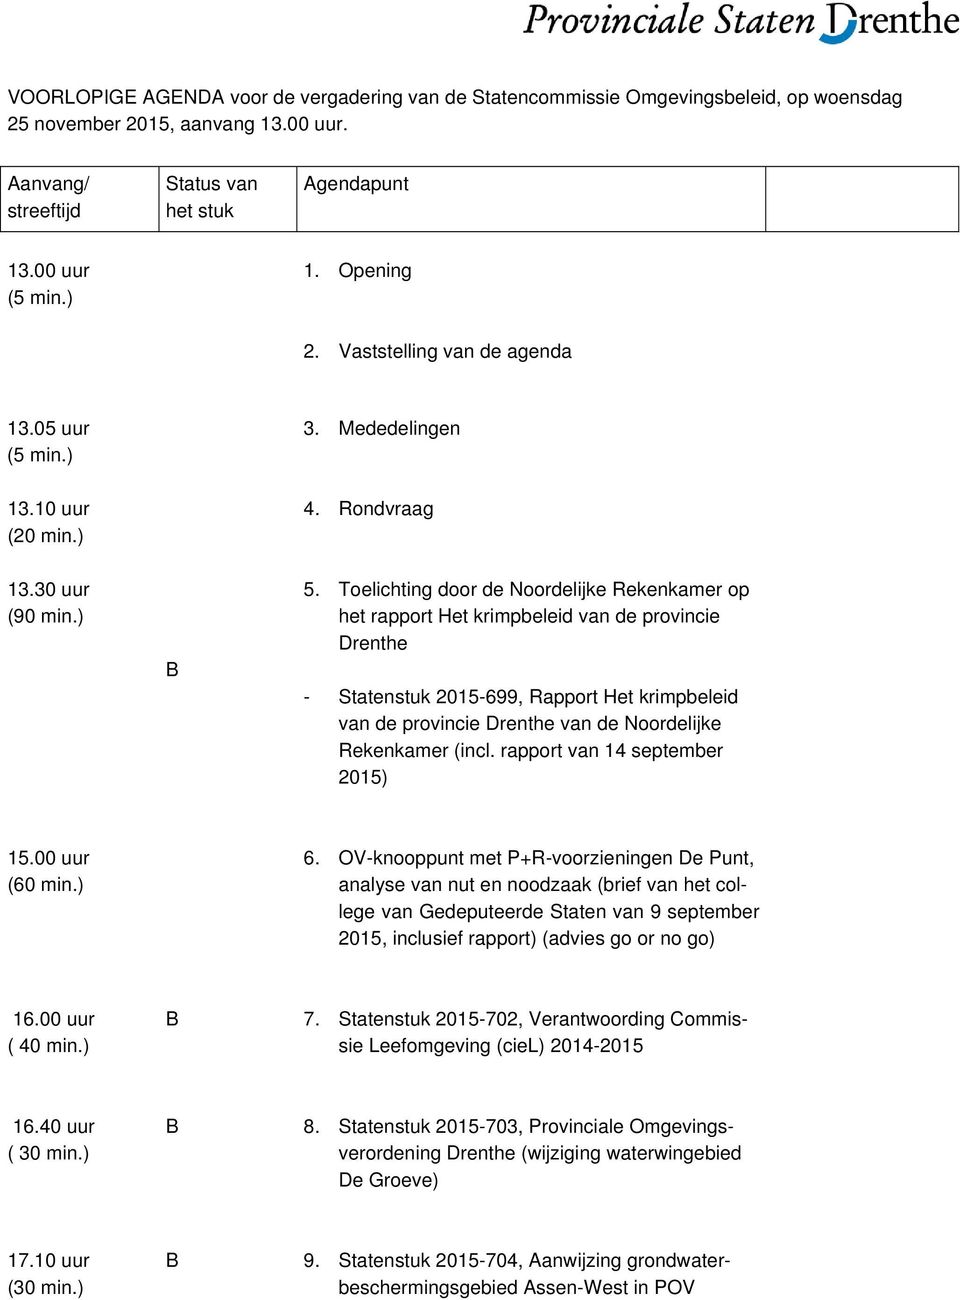 Toelichting door de Noordelijke Rekenkamer op het rapport Het krimpbeleid van de provincie Drenthe - Statenstuk 2015-699, Rapport Het krimpbeleid van de provincie Drenthe van de Noordelijke